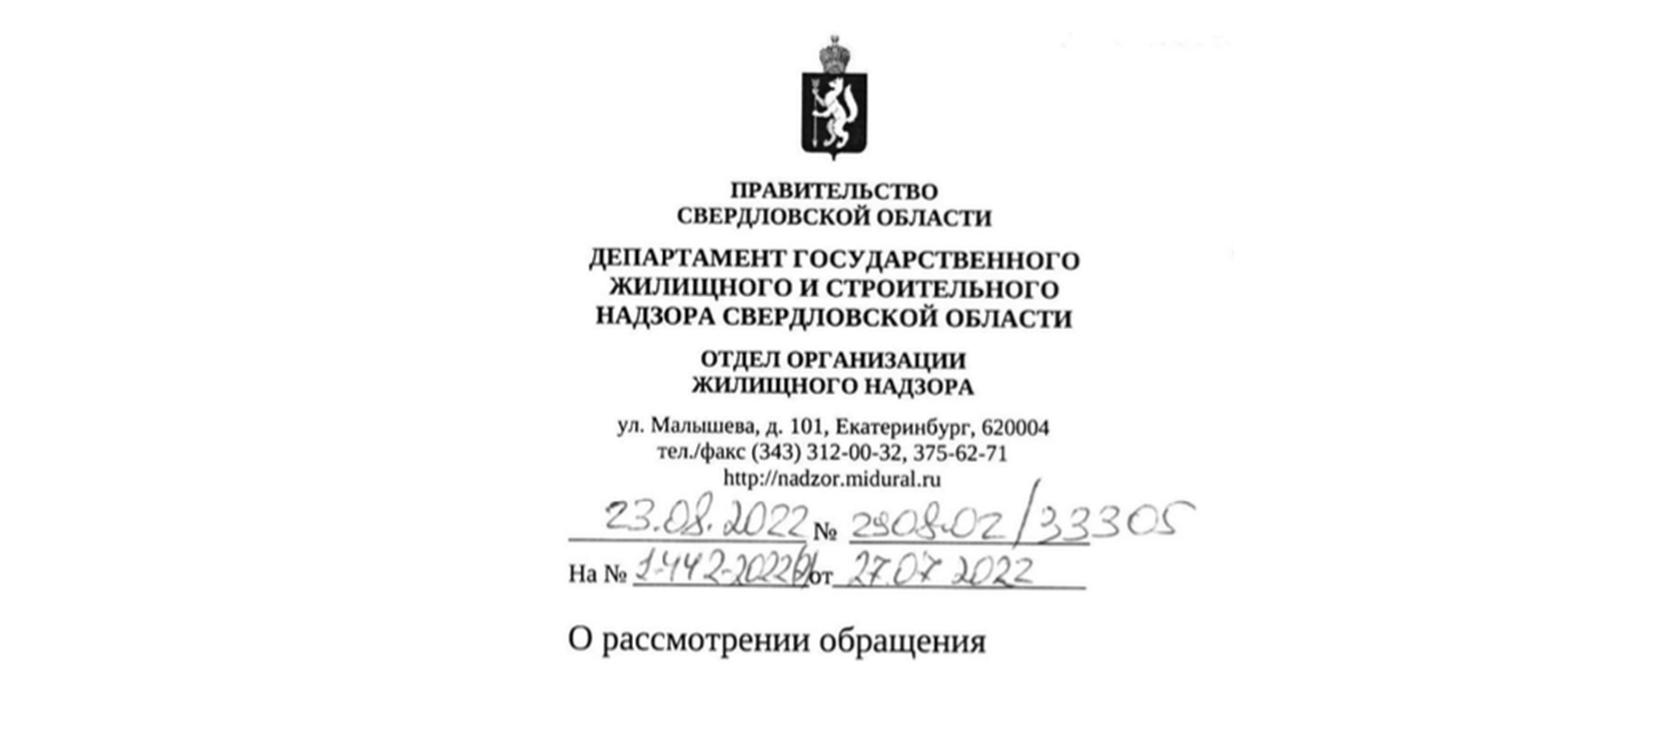 Ответ Департамента государственного жилищного и строительного надзора Свердловской области